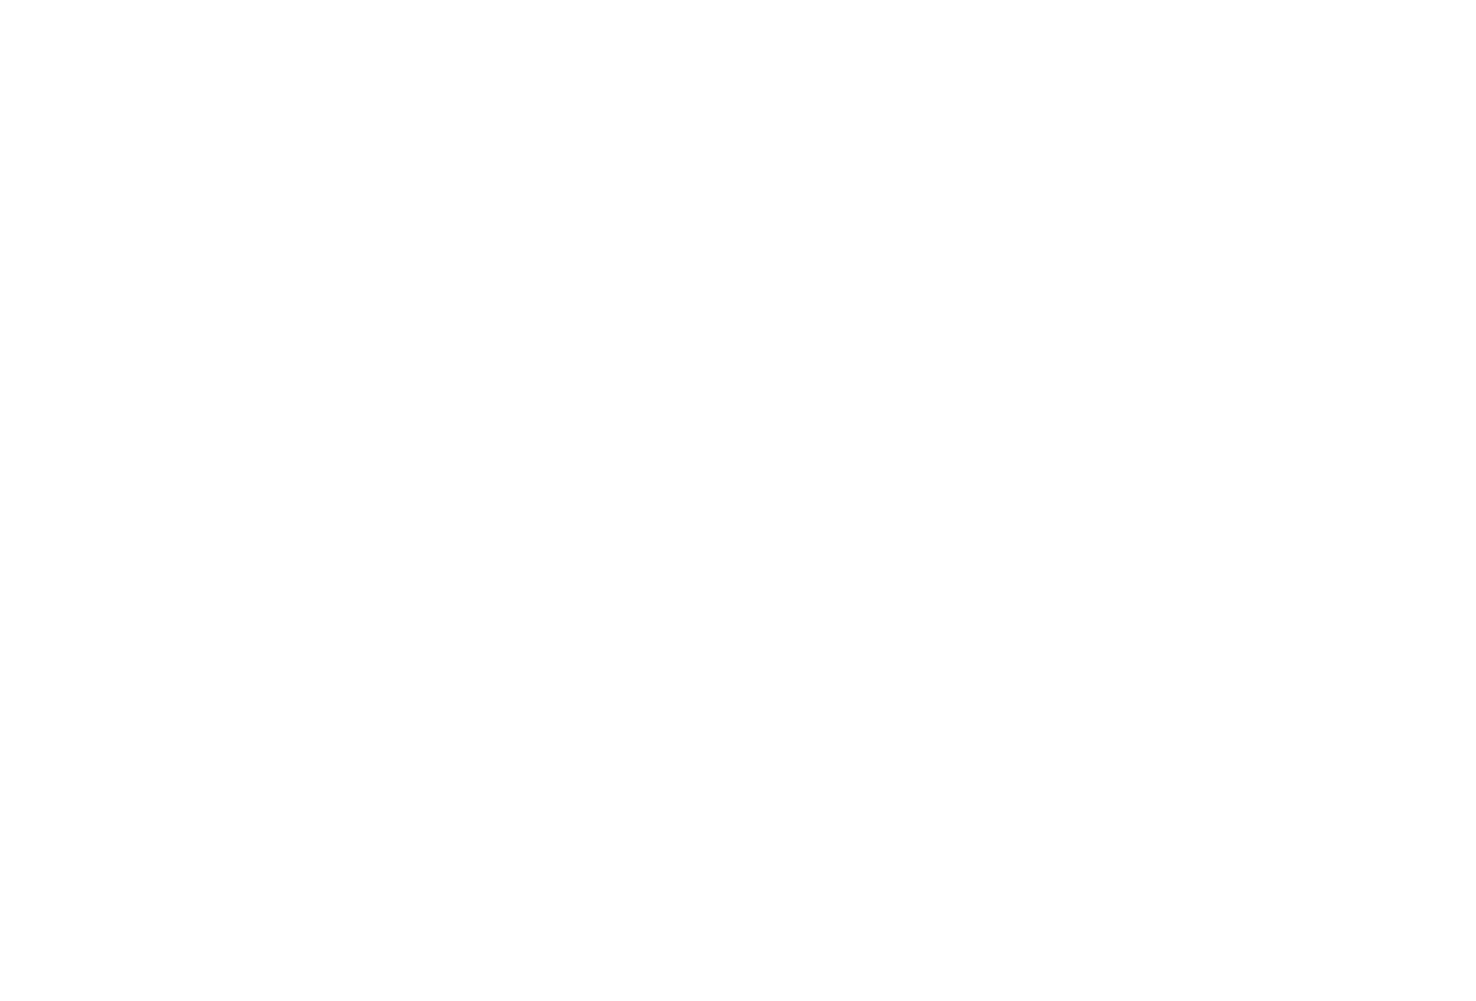 Spiritory logo white png